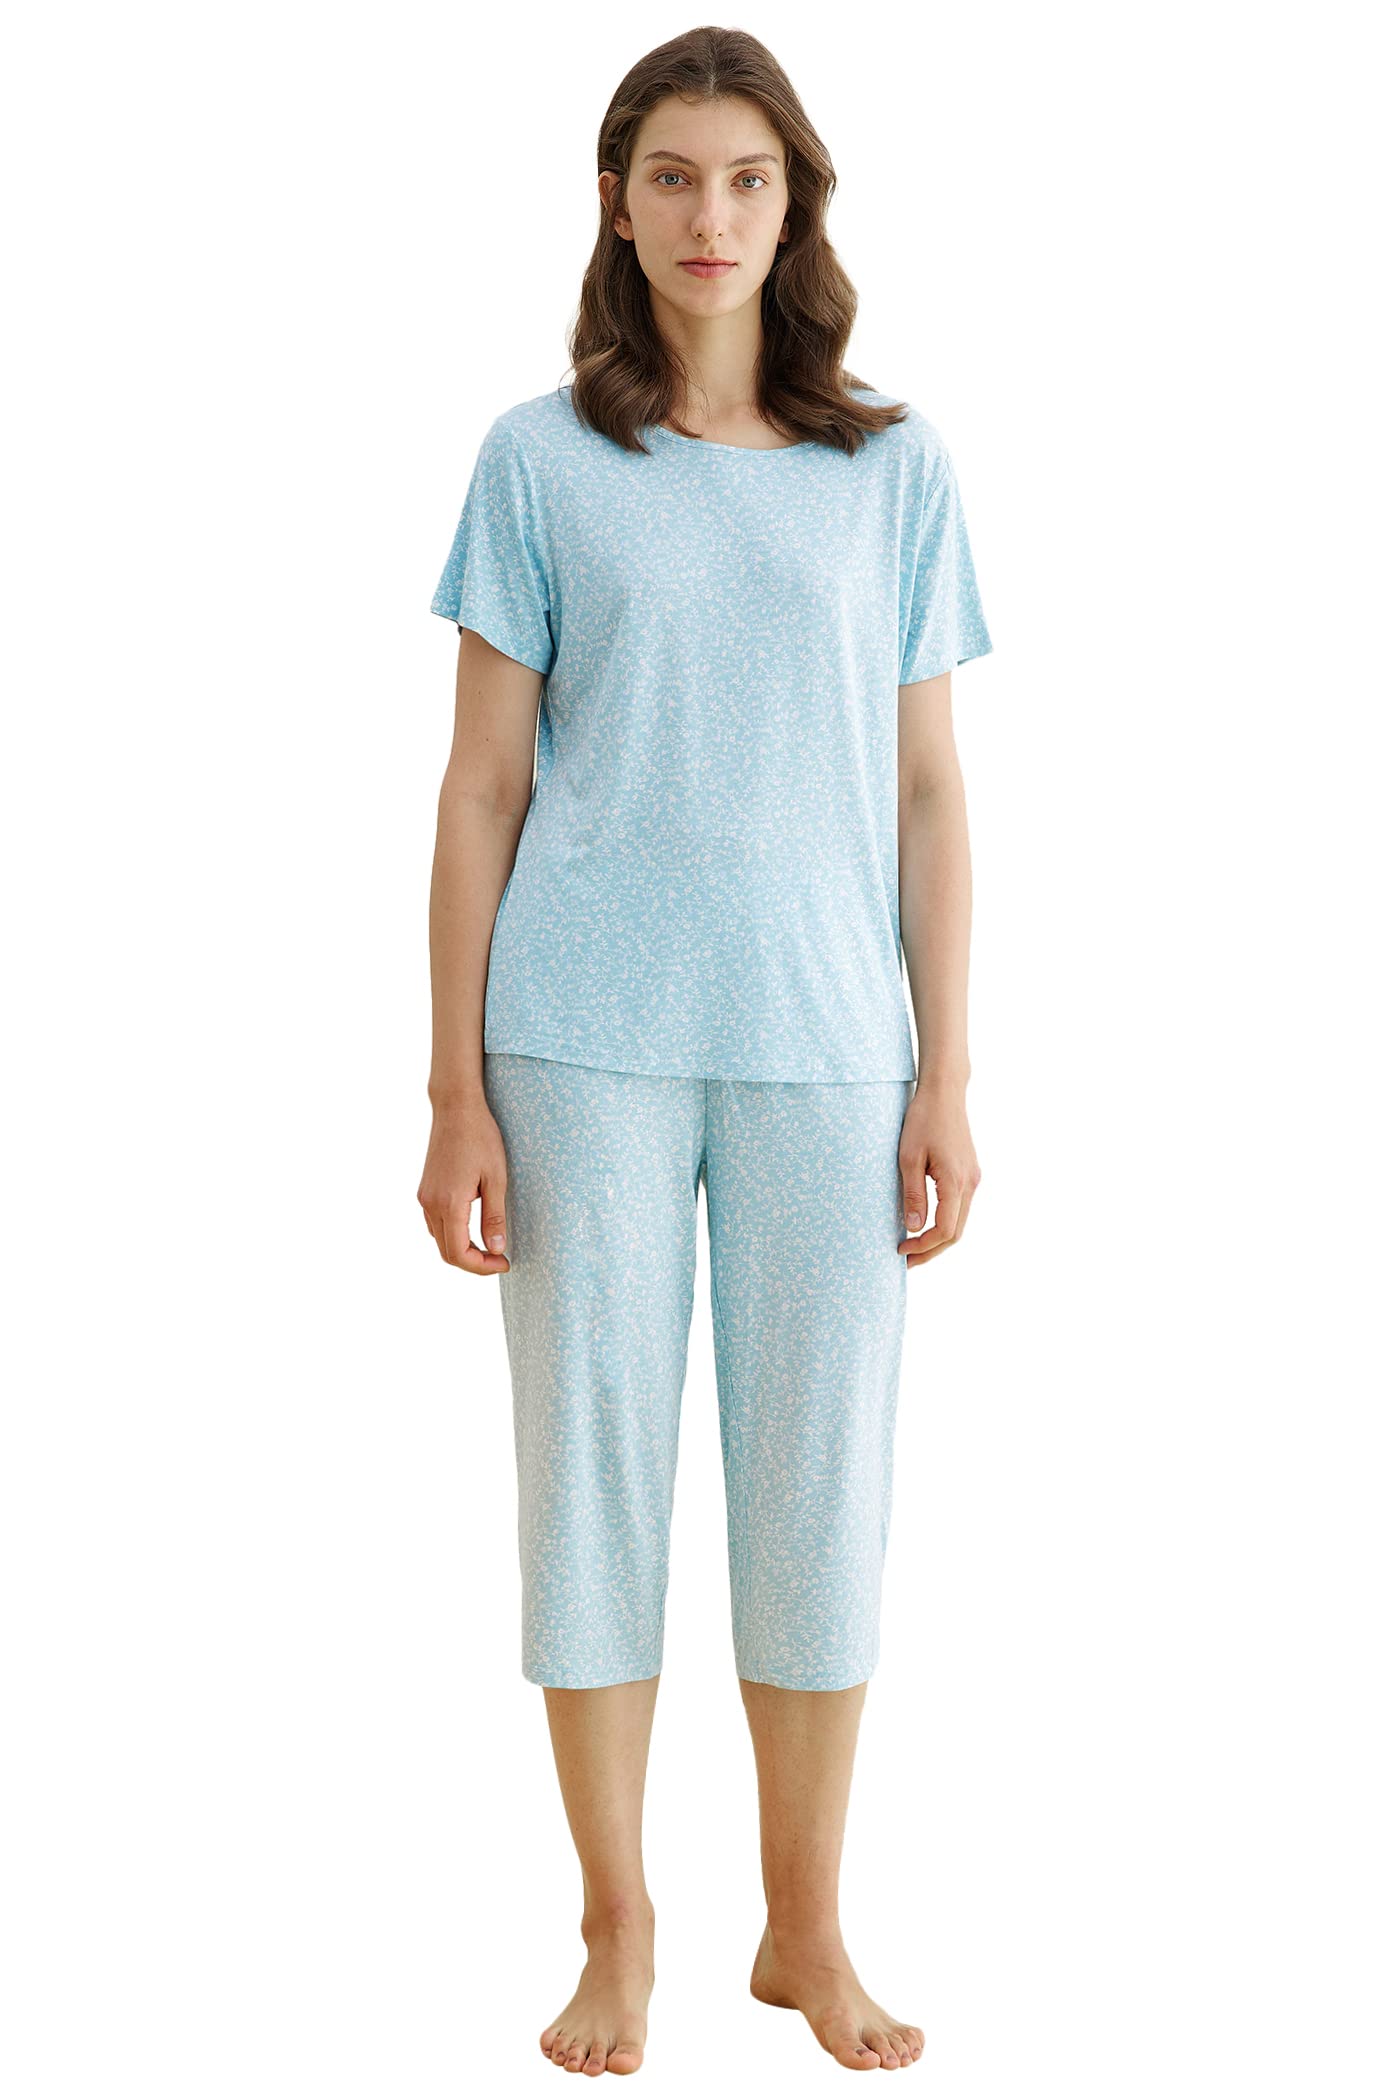 Ladies Capri Pyjamas Cropped Pyjama Set for Womens Jersey 8 10 12